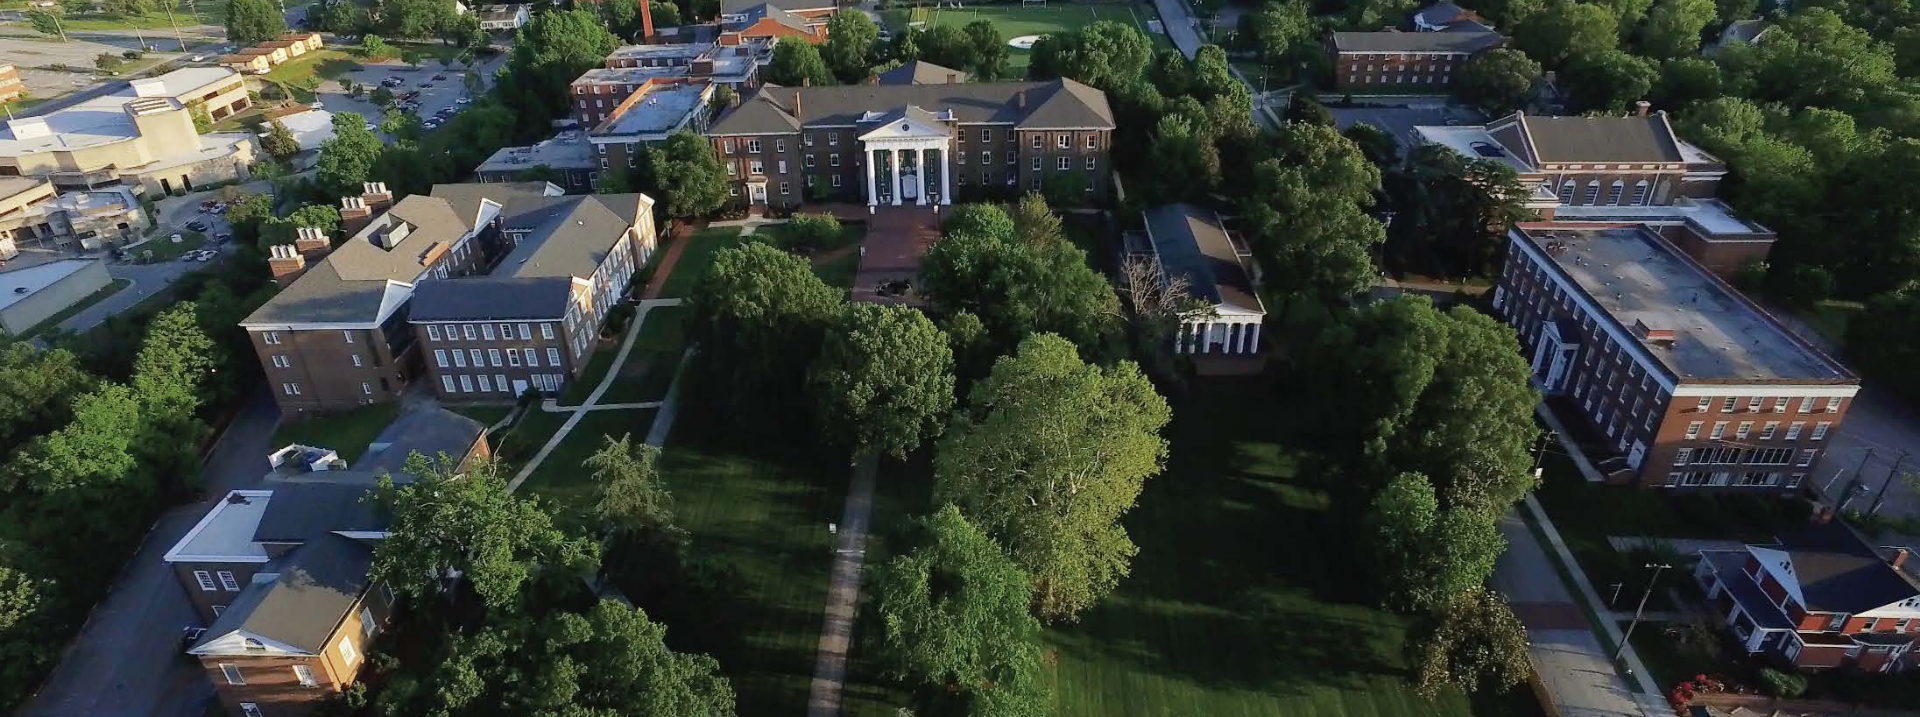 Greensboro College Campus Aerial Photo